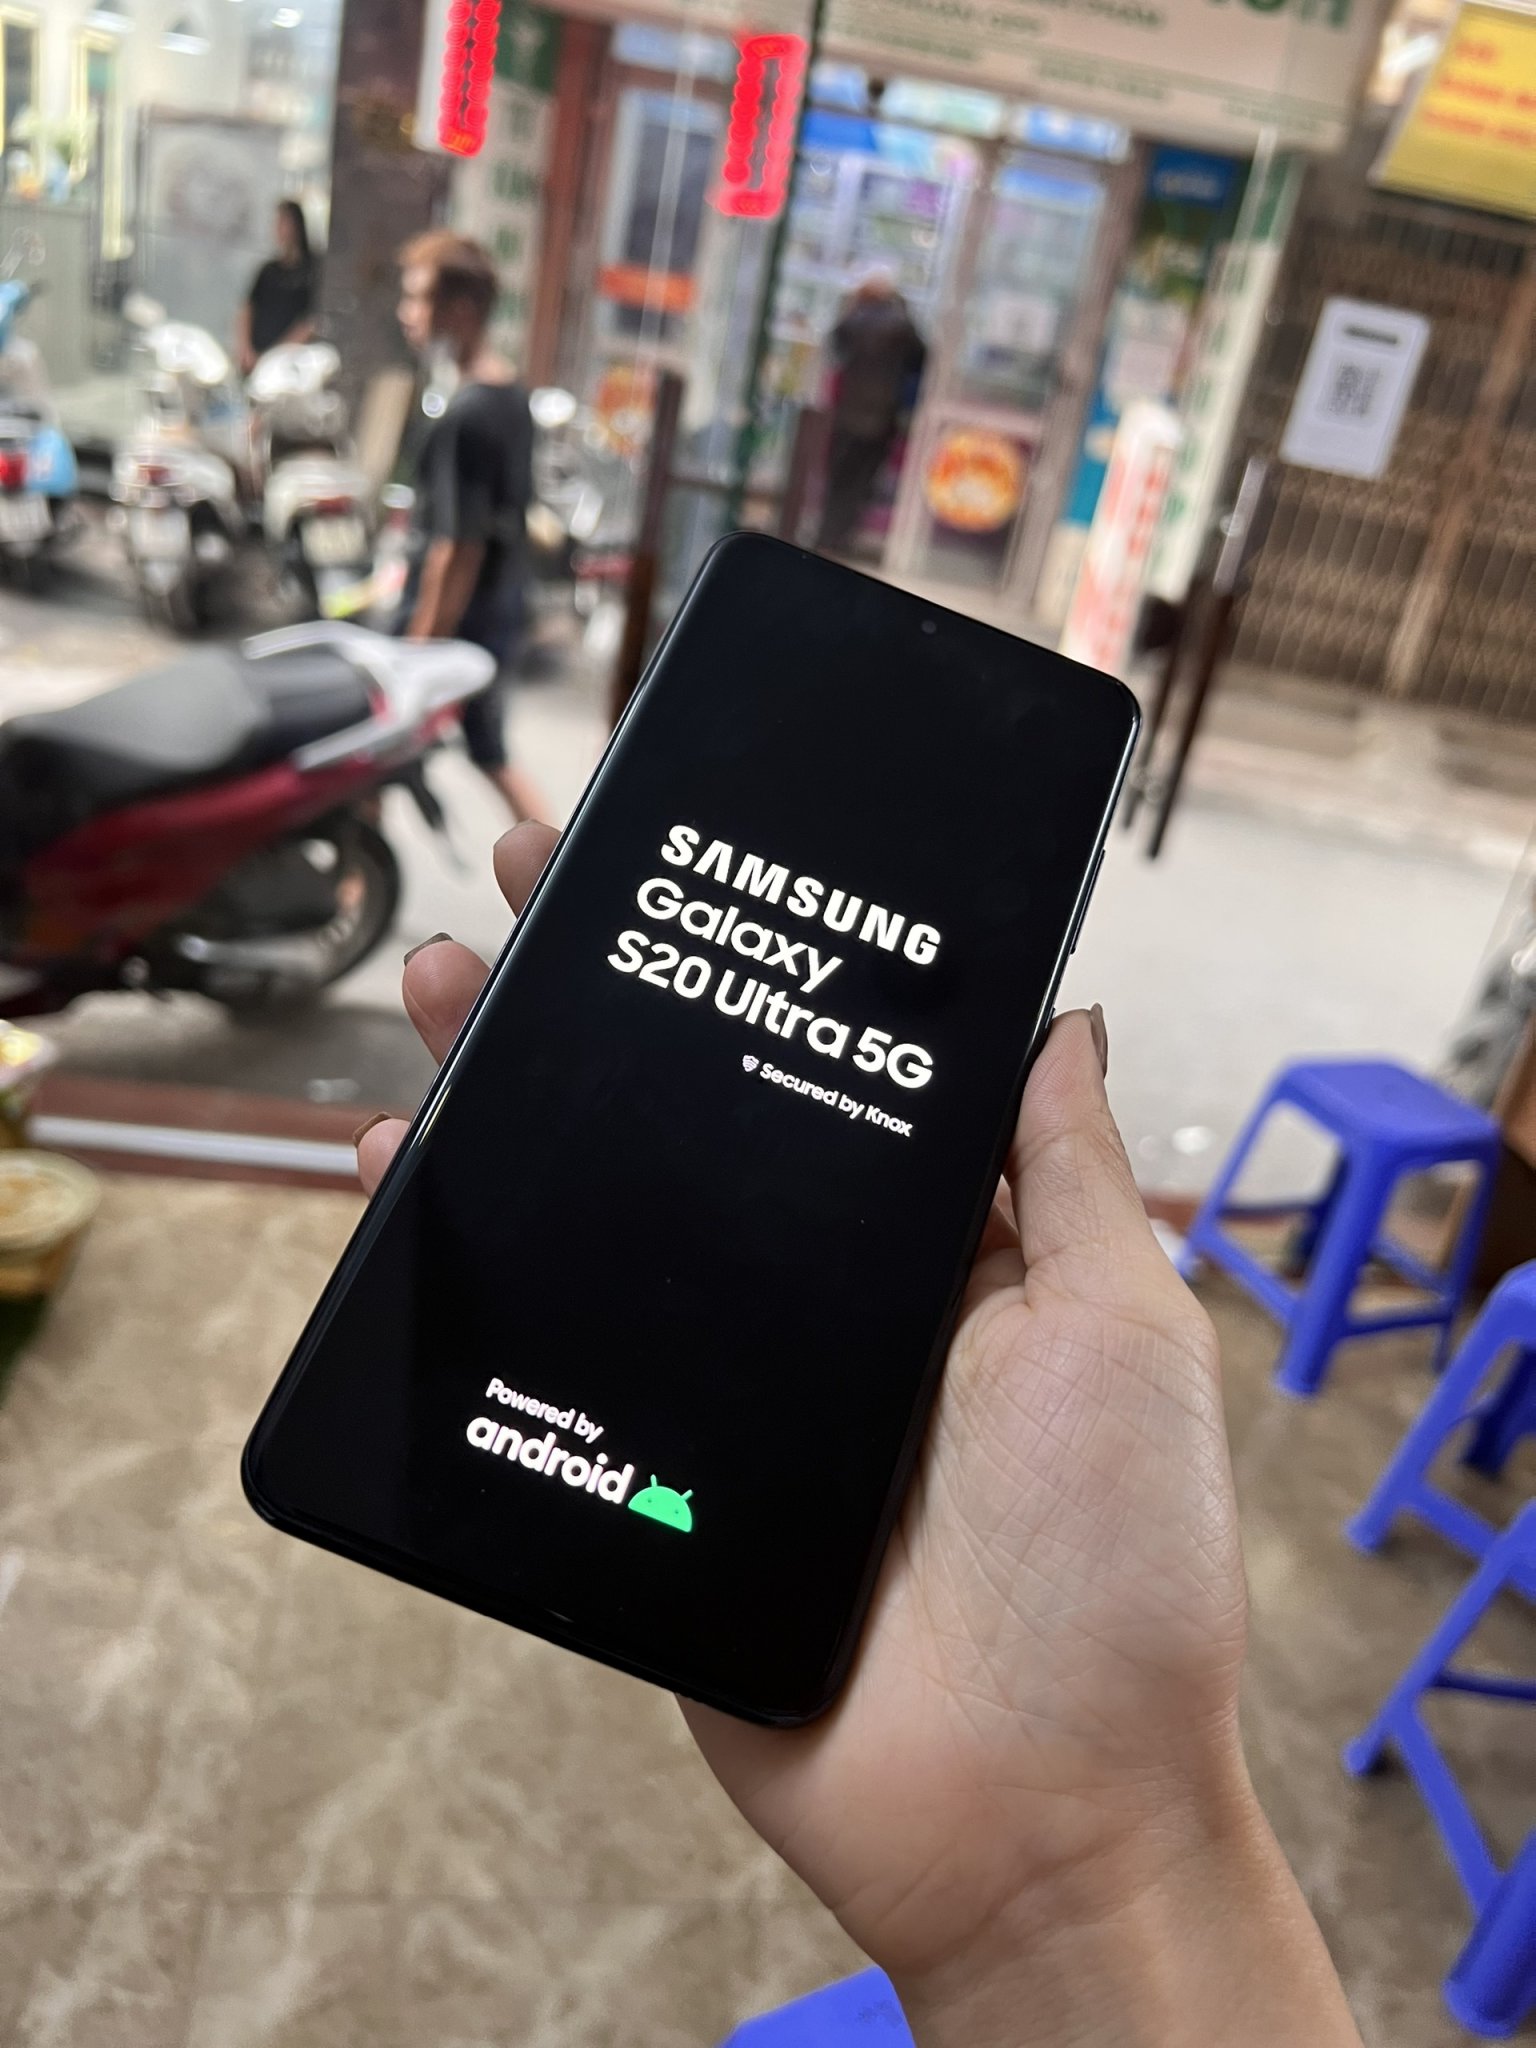 Samsung Galaxy s20 ультра 5g